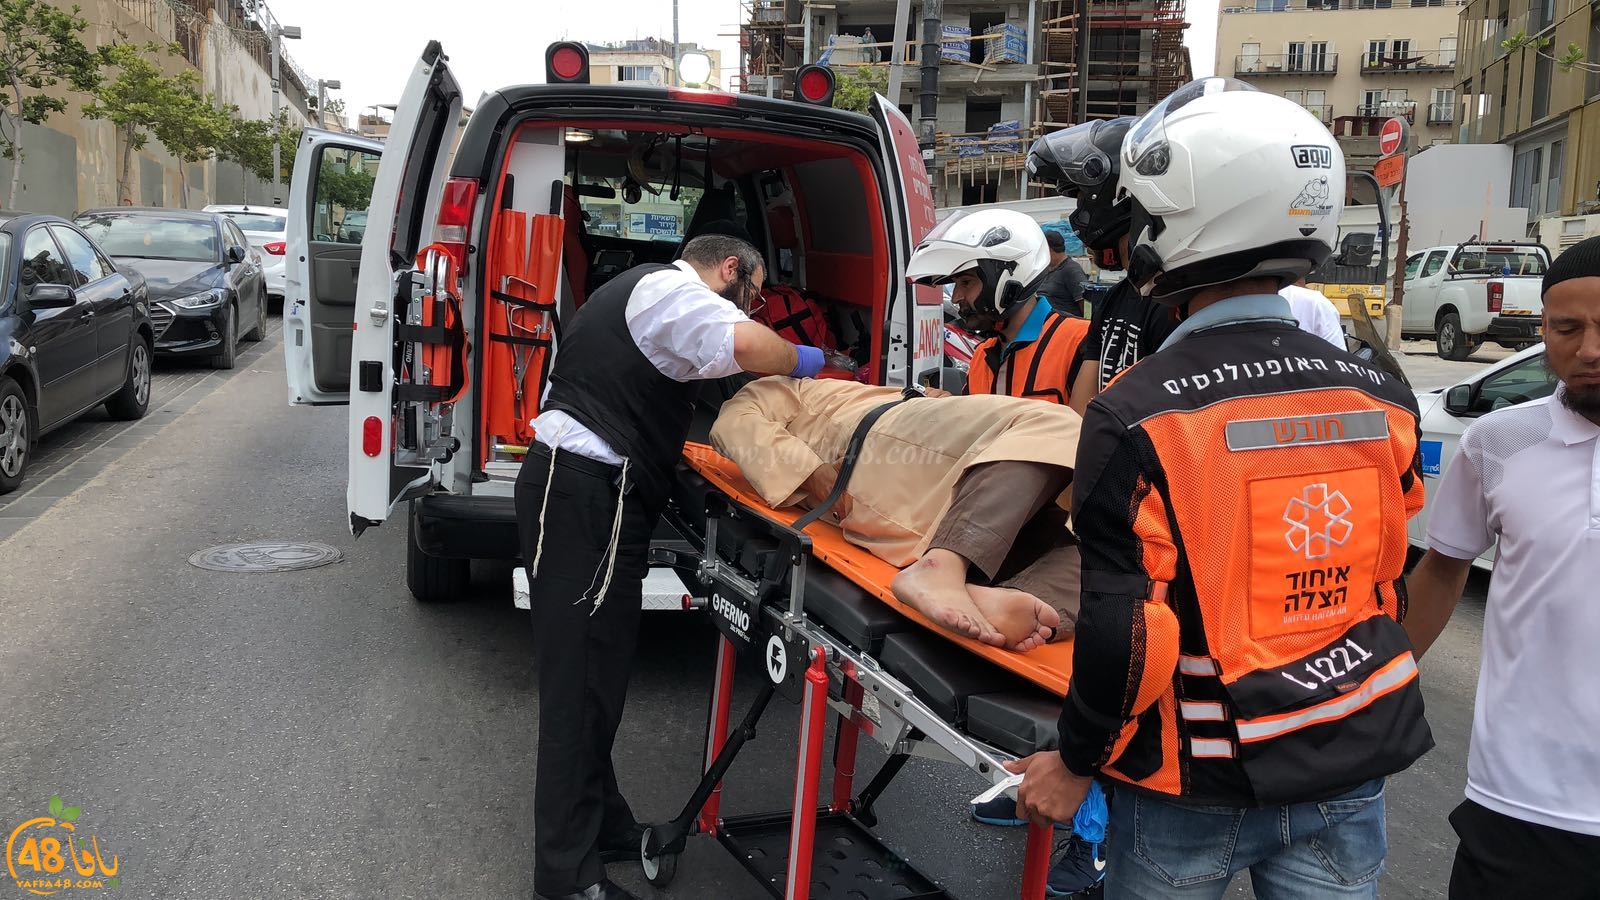  بالصور: اصابة متوسطة للشيخ محمد عايش اثر تعرضه لحادث طرق بيافا 